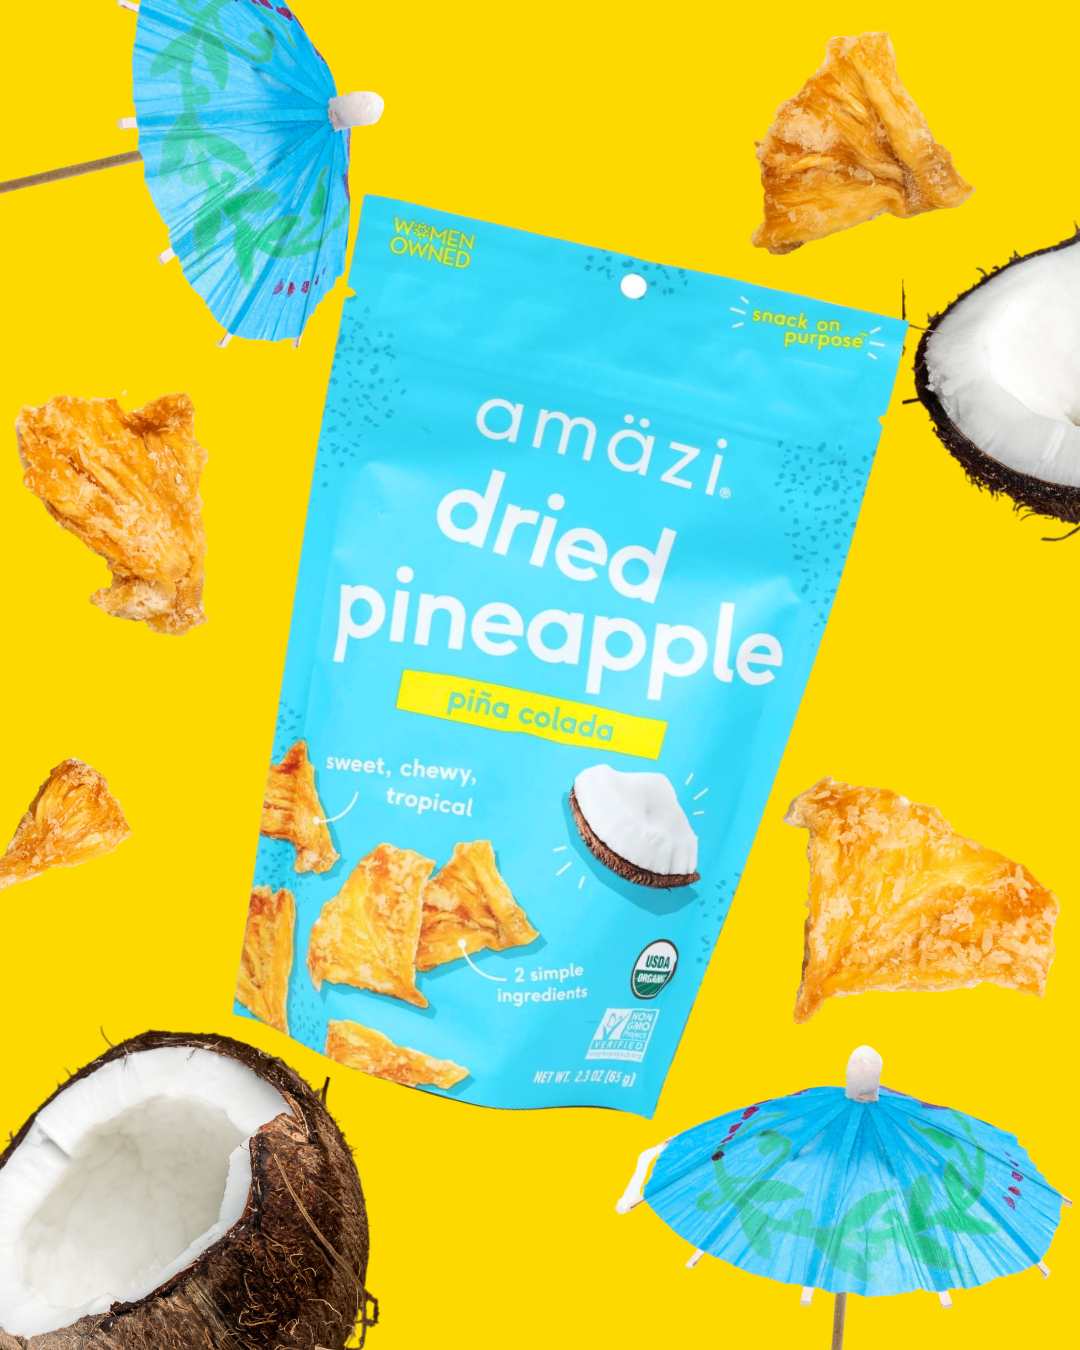 Pina Colada Dried Pineapple by Amazi